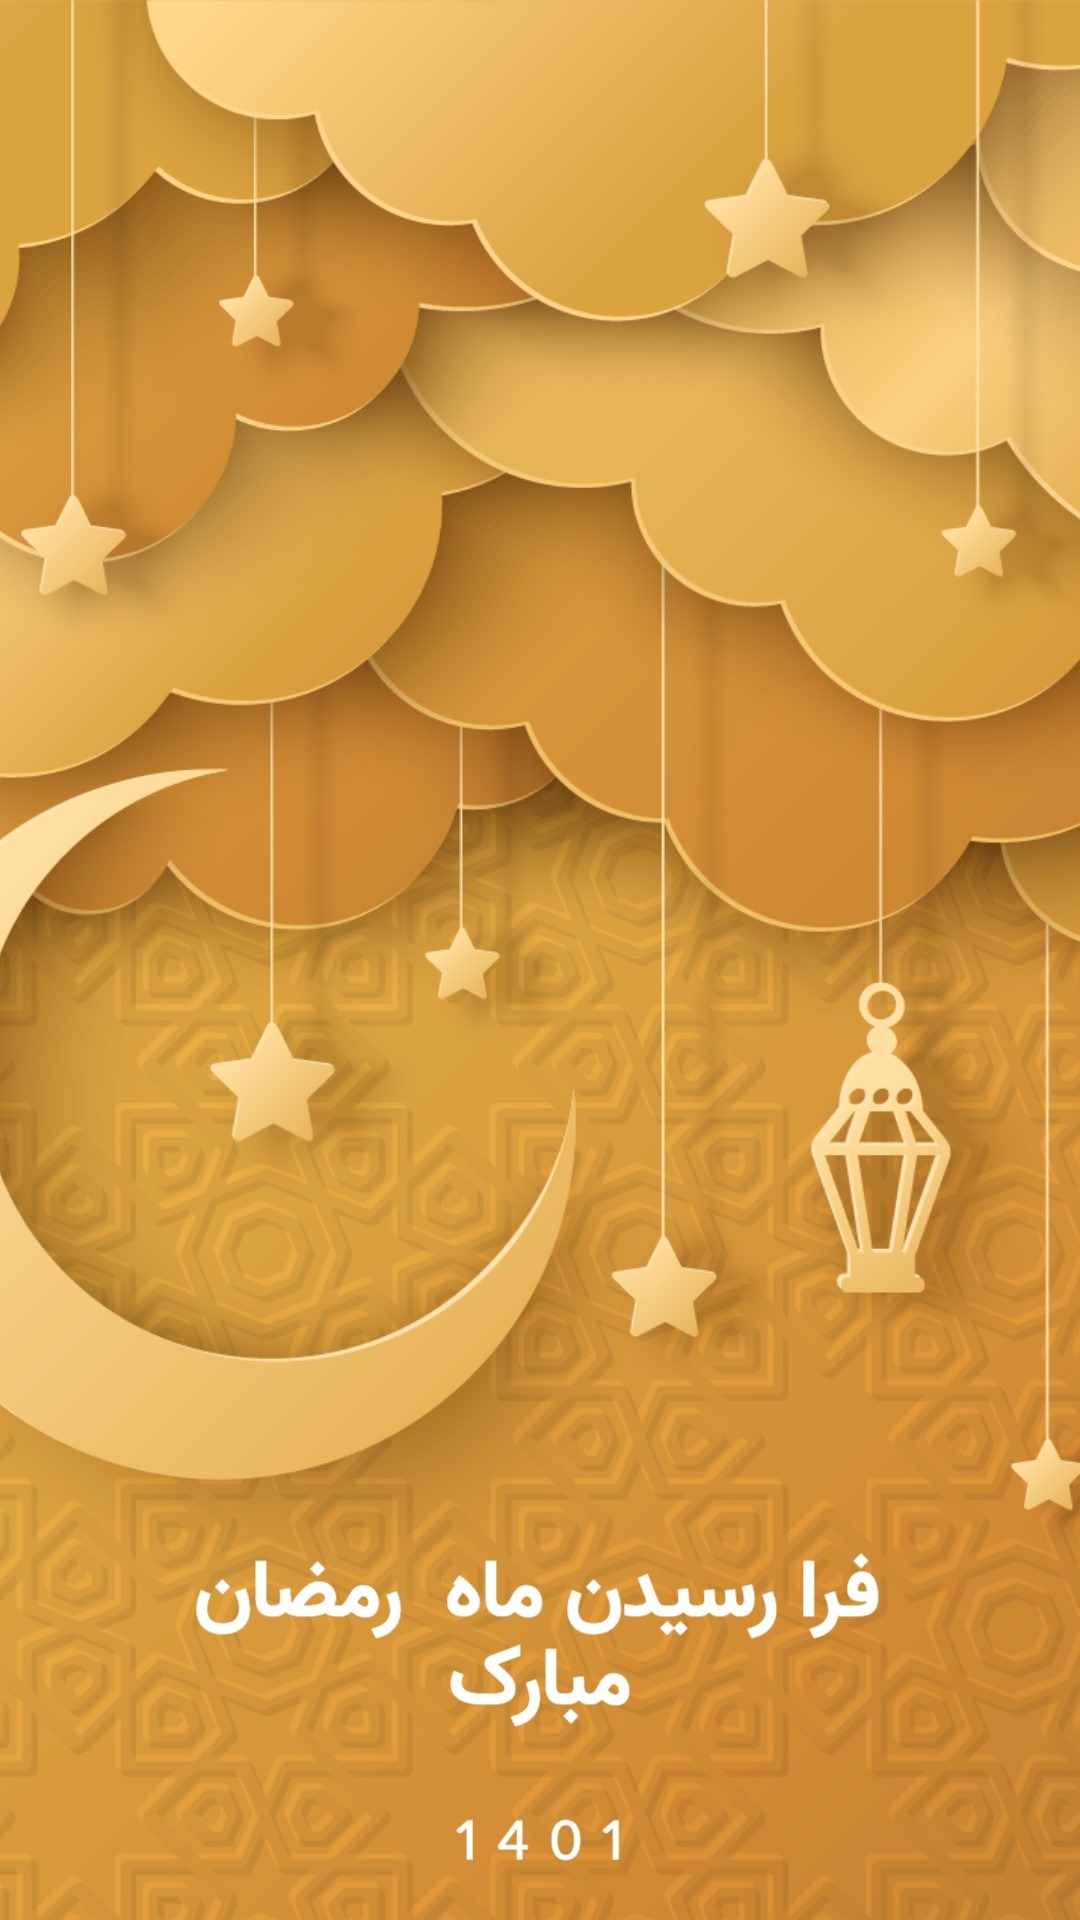 خلاقانه ترین ایده های طراحی پست اینستا برای ماه رمضان